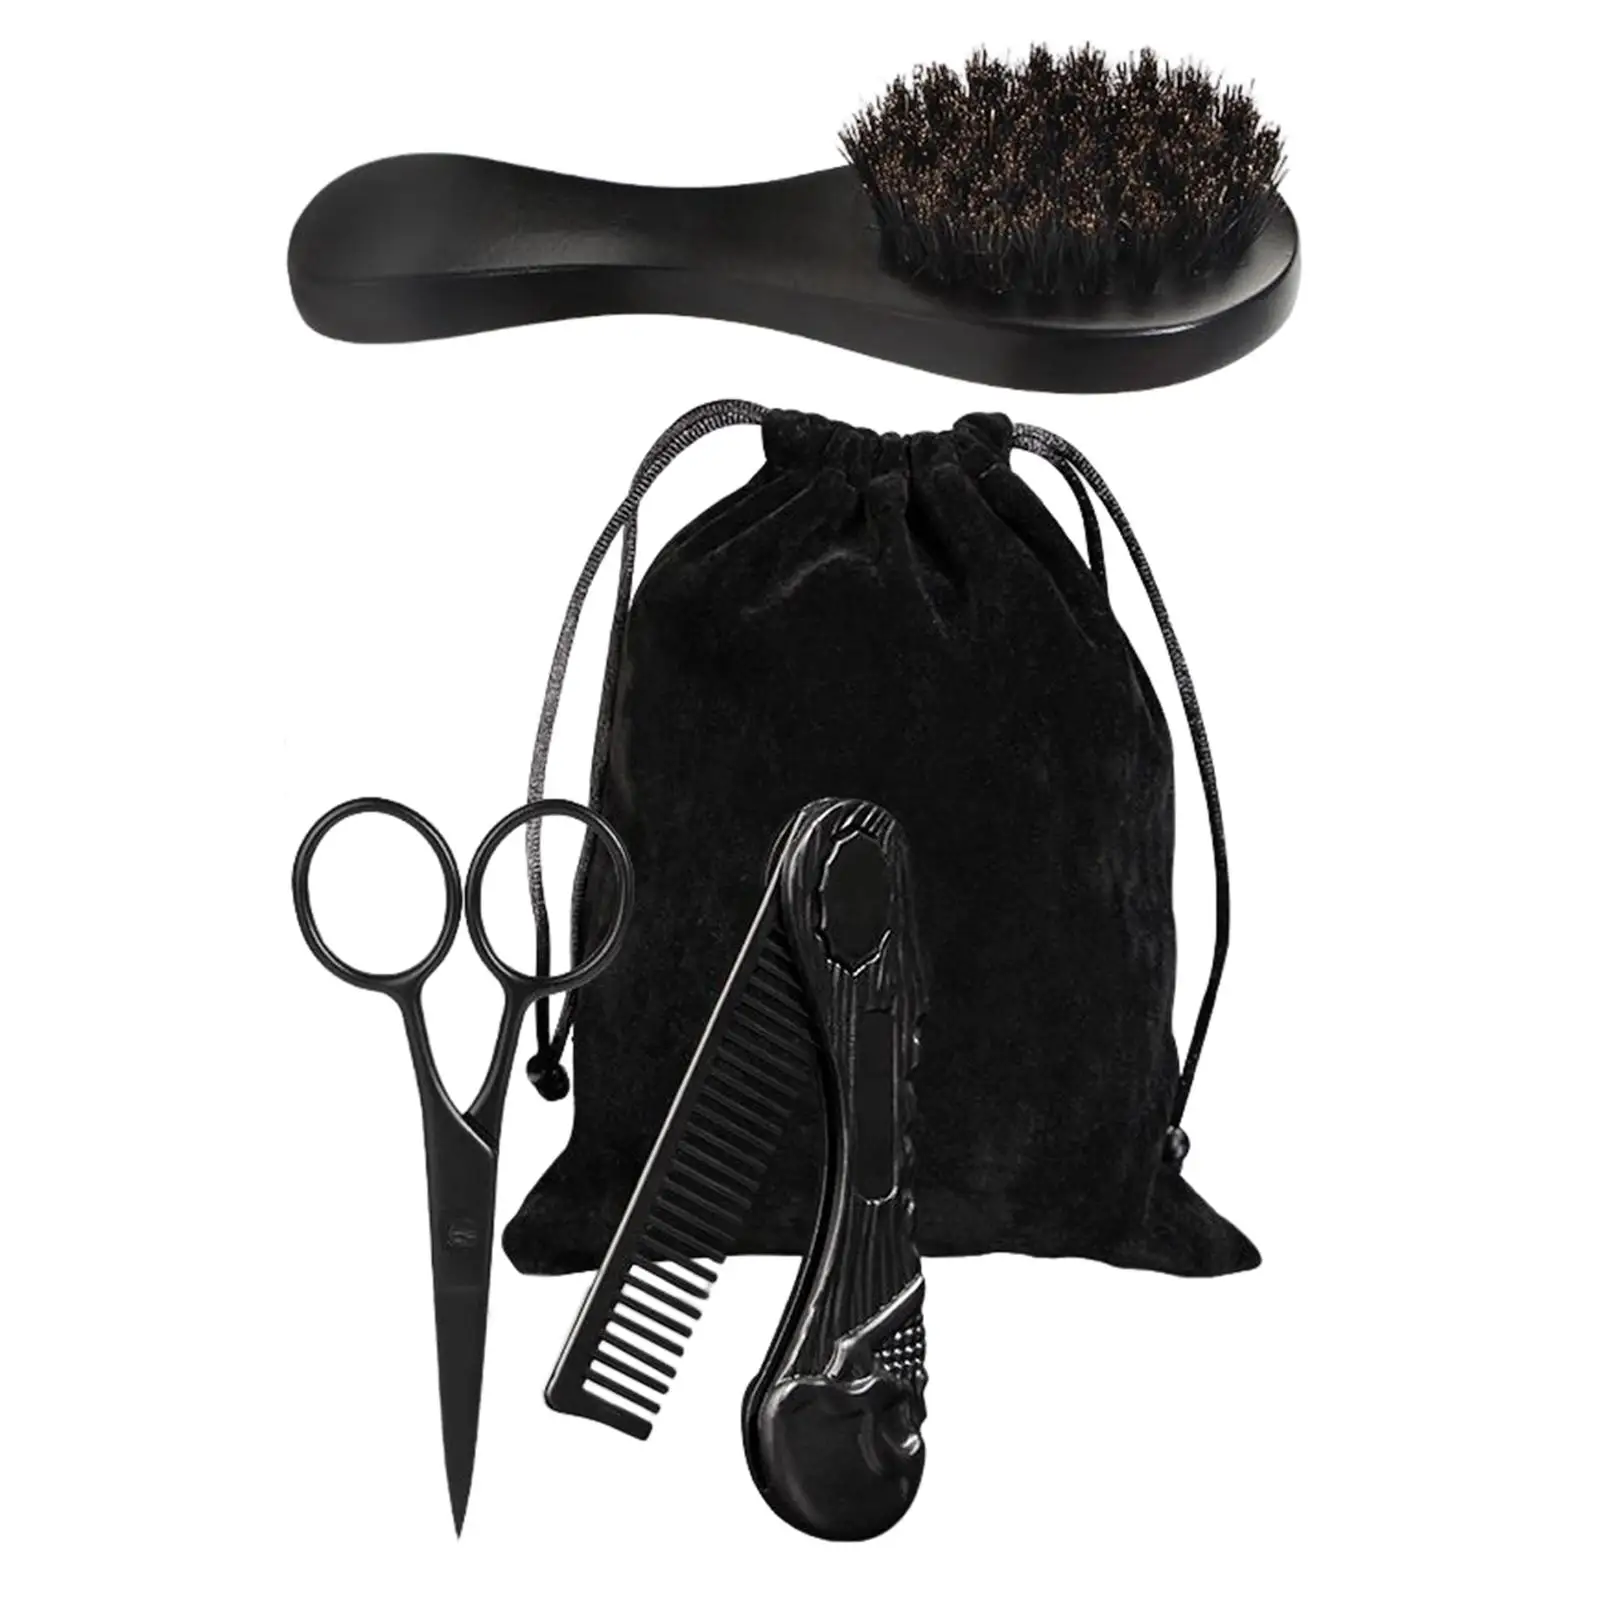 3x Professional Beard Care Kit for Men Gift Wooden Folding Comb Brush Mustache Scissors for Travel Men`s Home Beard Grooming Kit